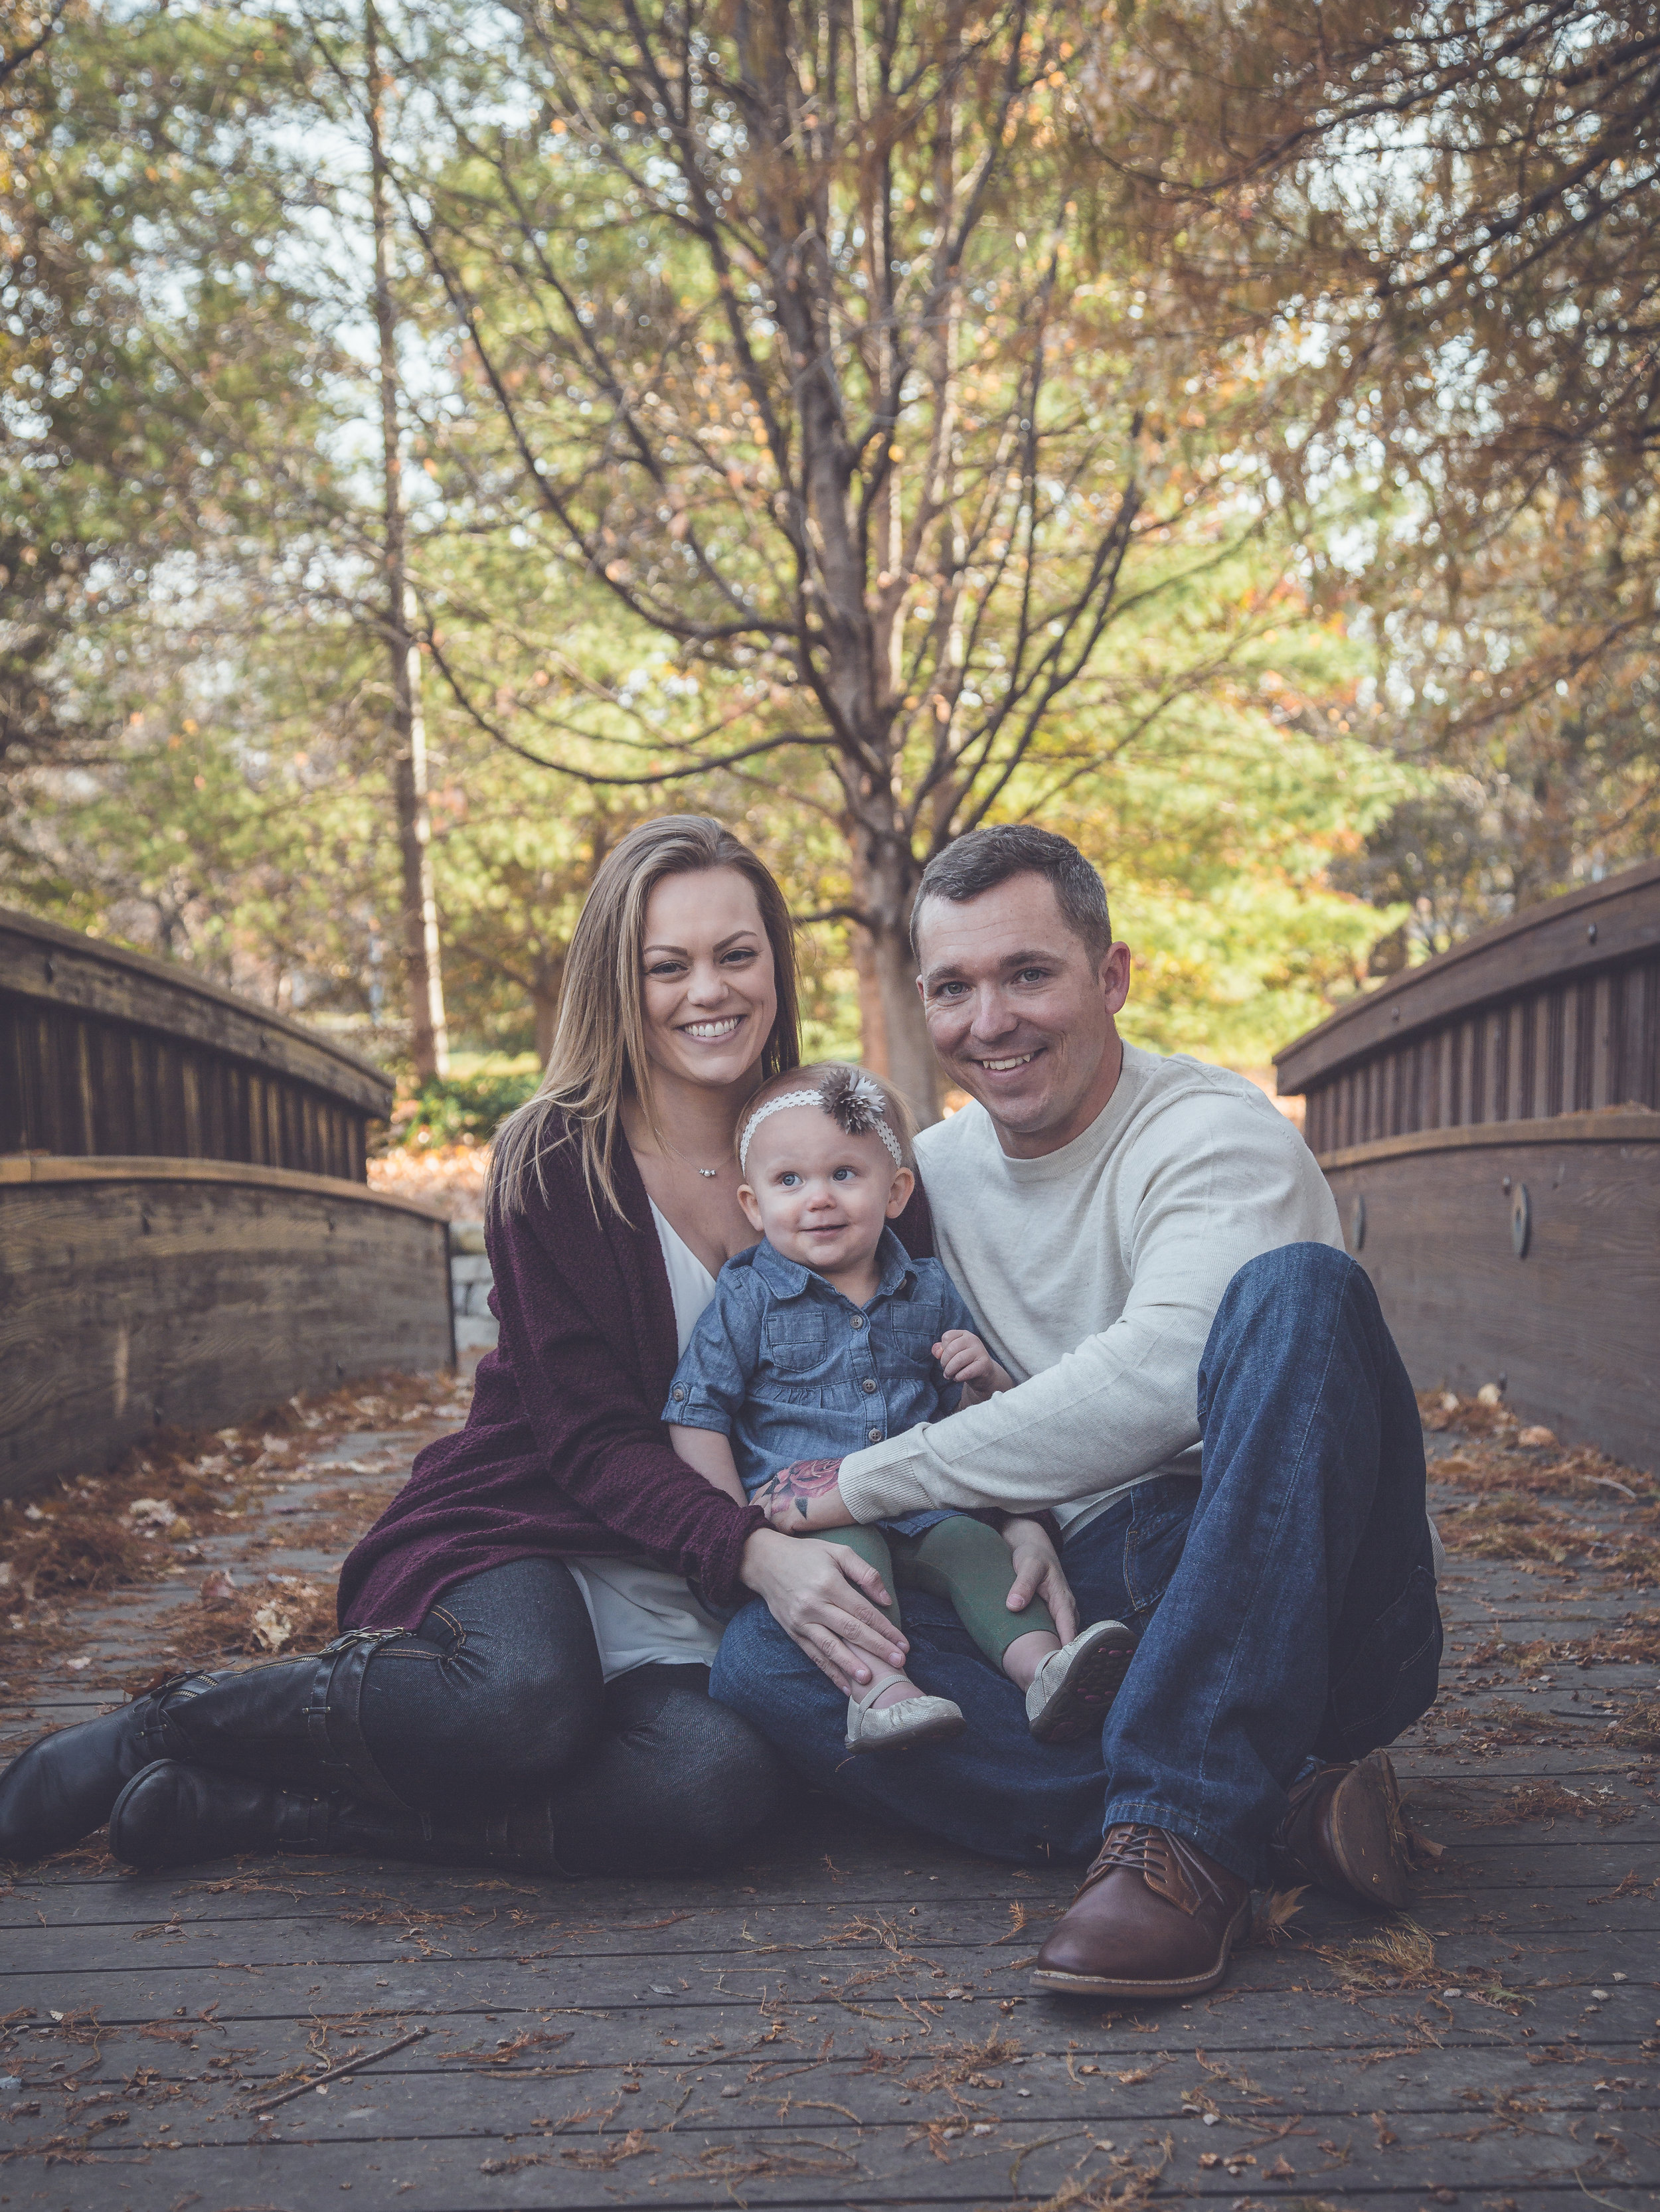 Bennett-Burrell Family Photos 2018 (28 of 39).jpg